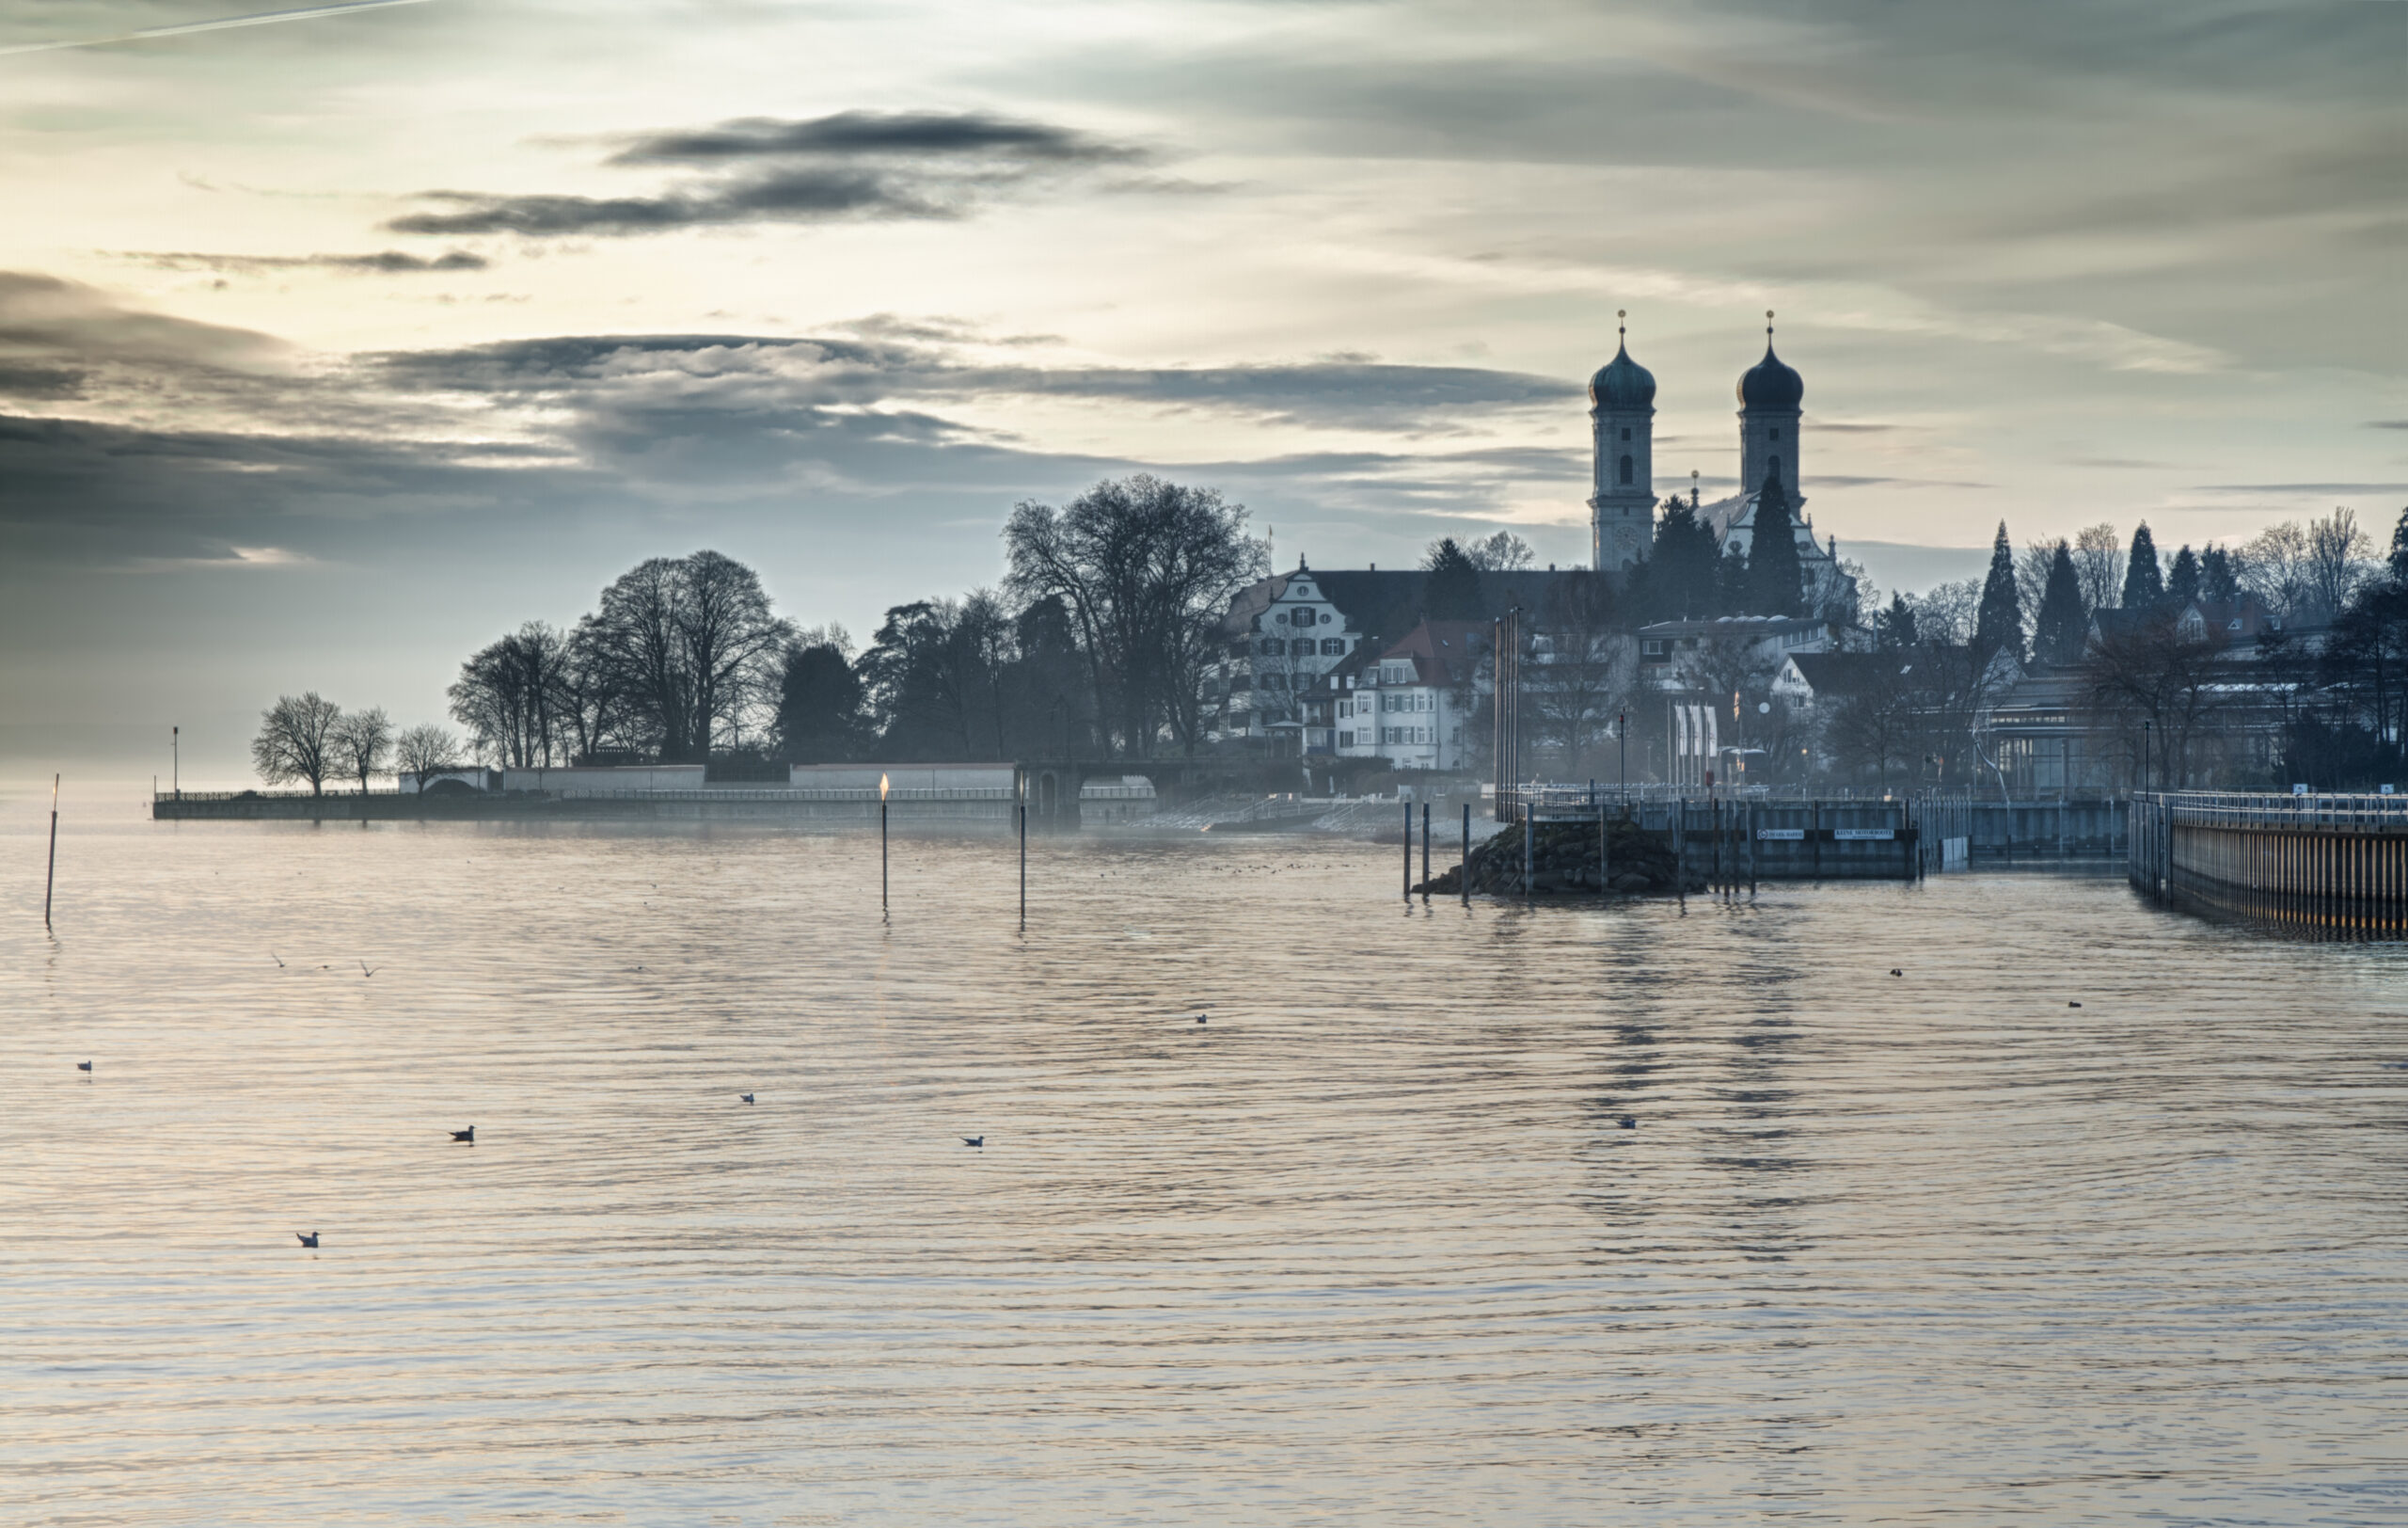 Bodensee (Lake Constance) with Schlosskirche (church) of Friedrichshafen, G